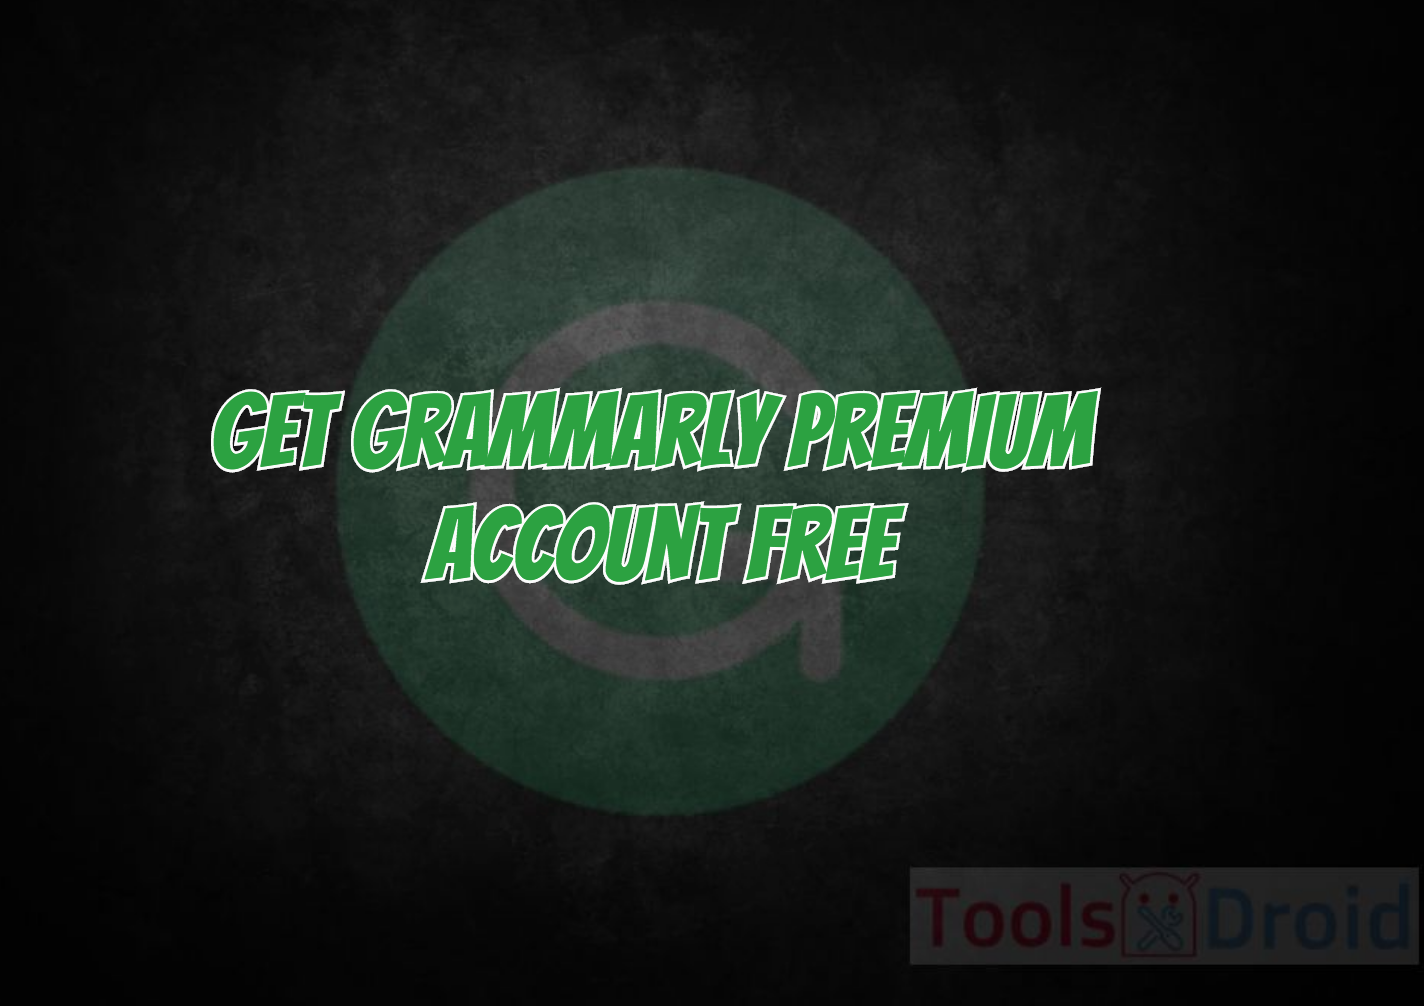 grammarly free premium account 2018